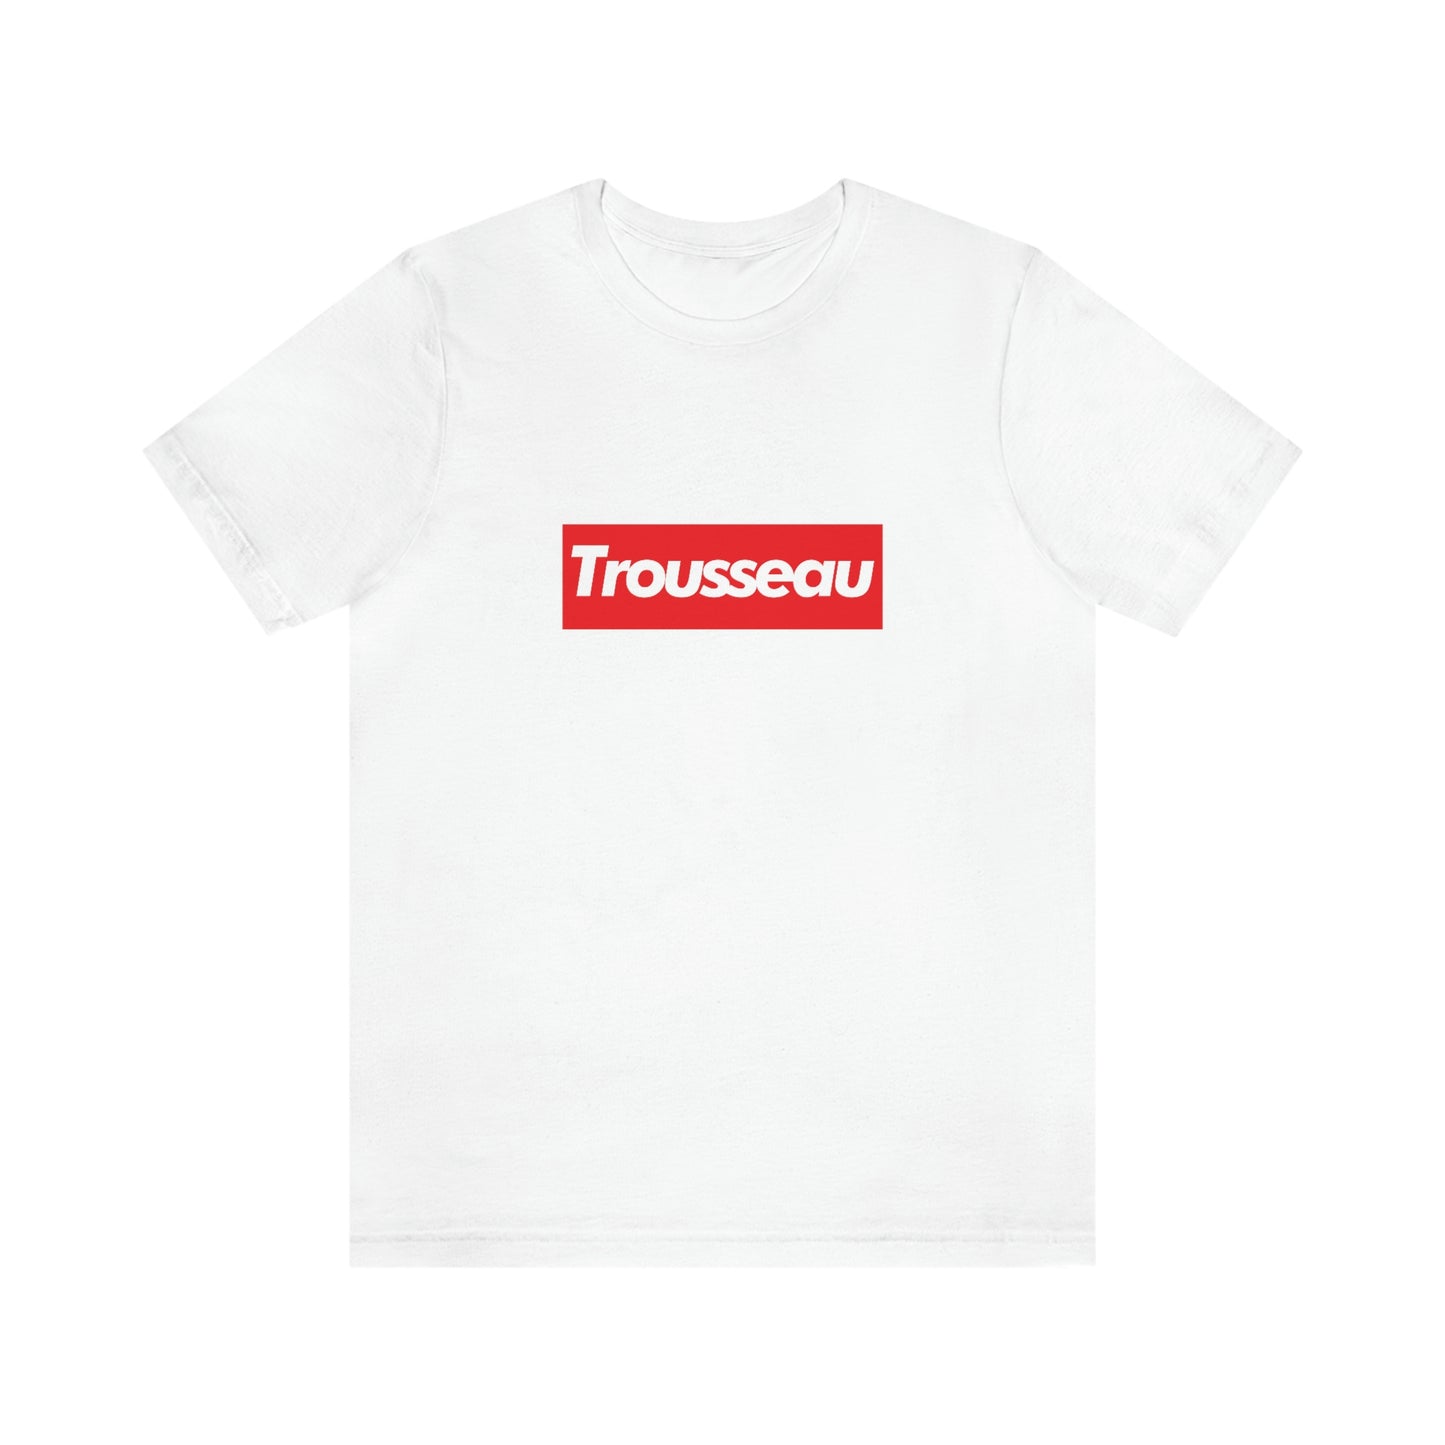 Trousseau T-shirt